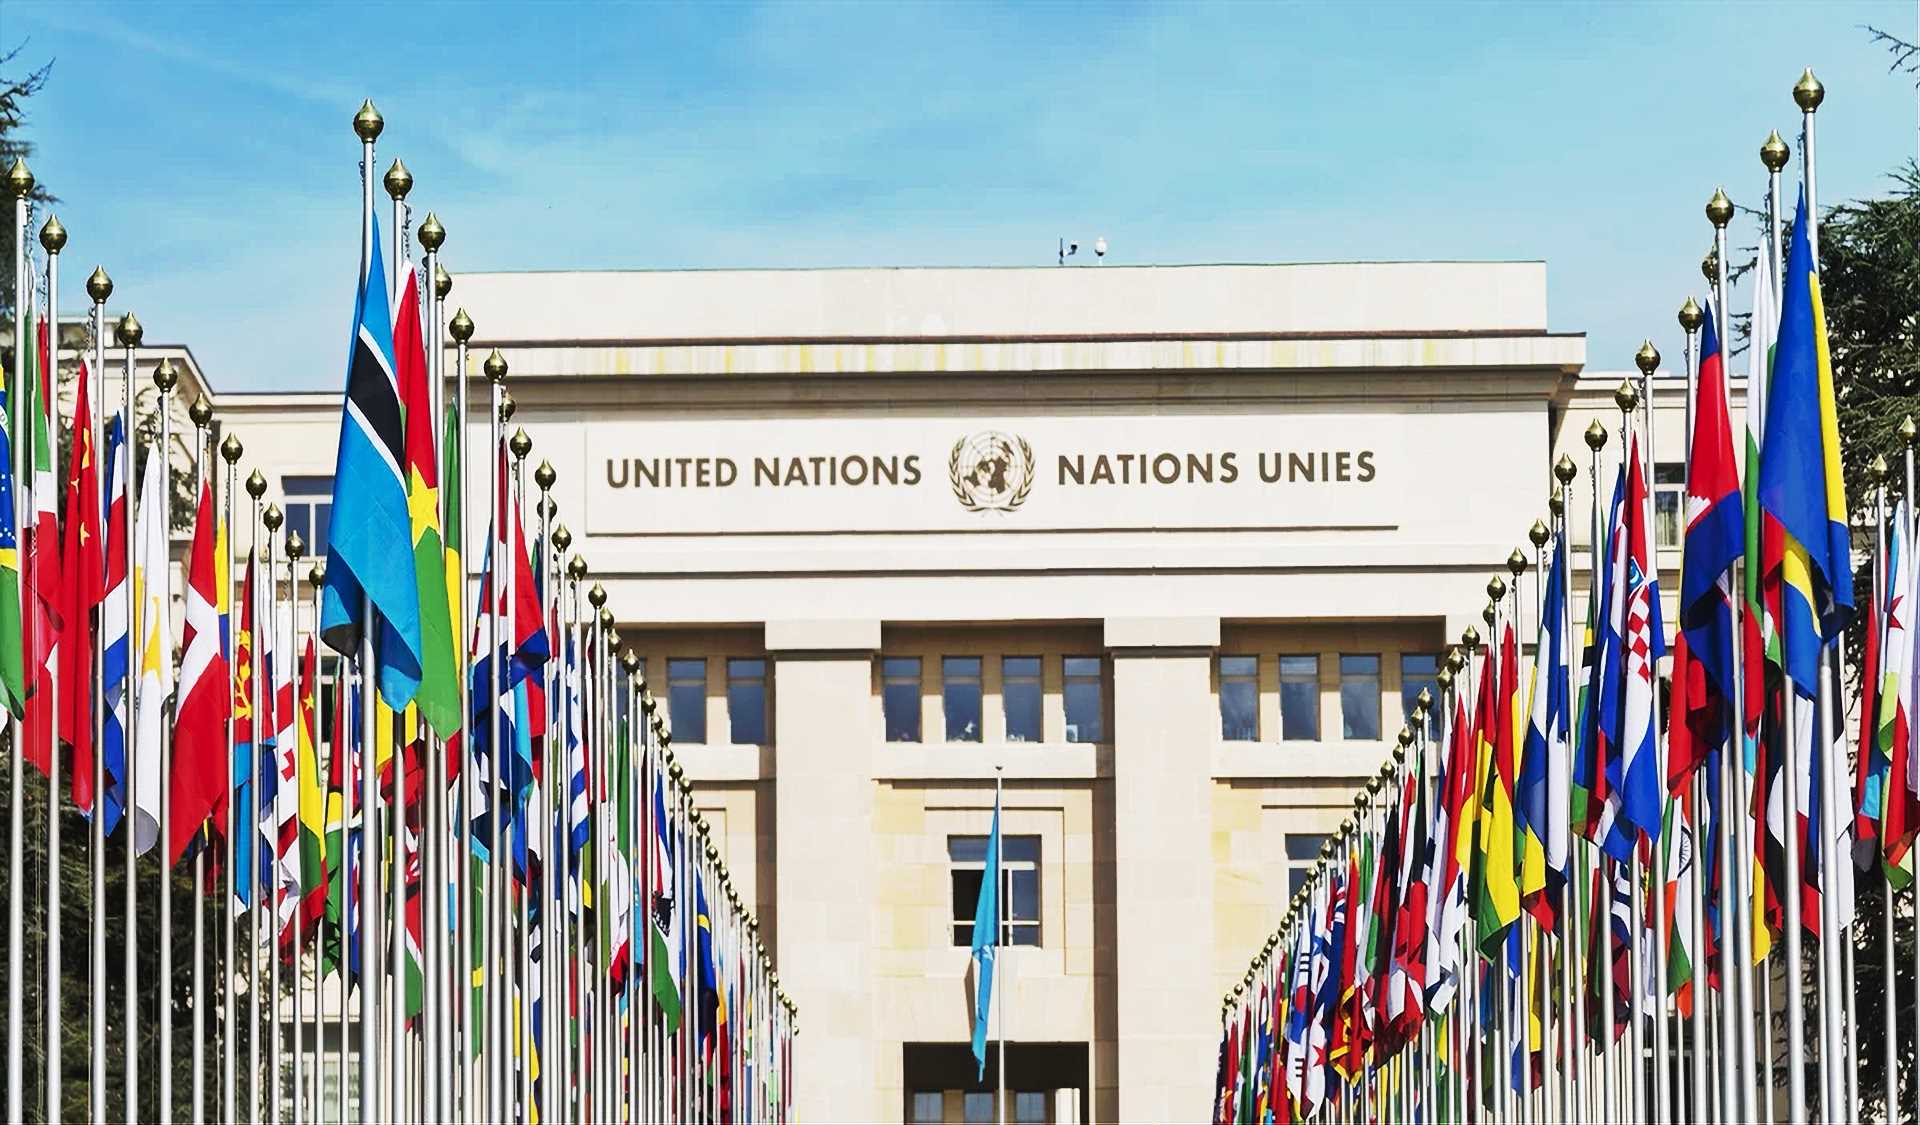 Fixer l’ordre fondé sur des règles : commencer par l’ONU